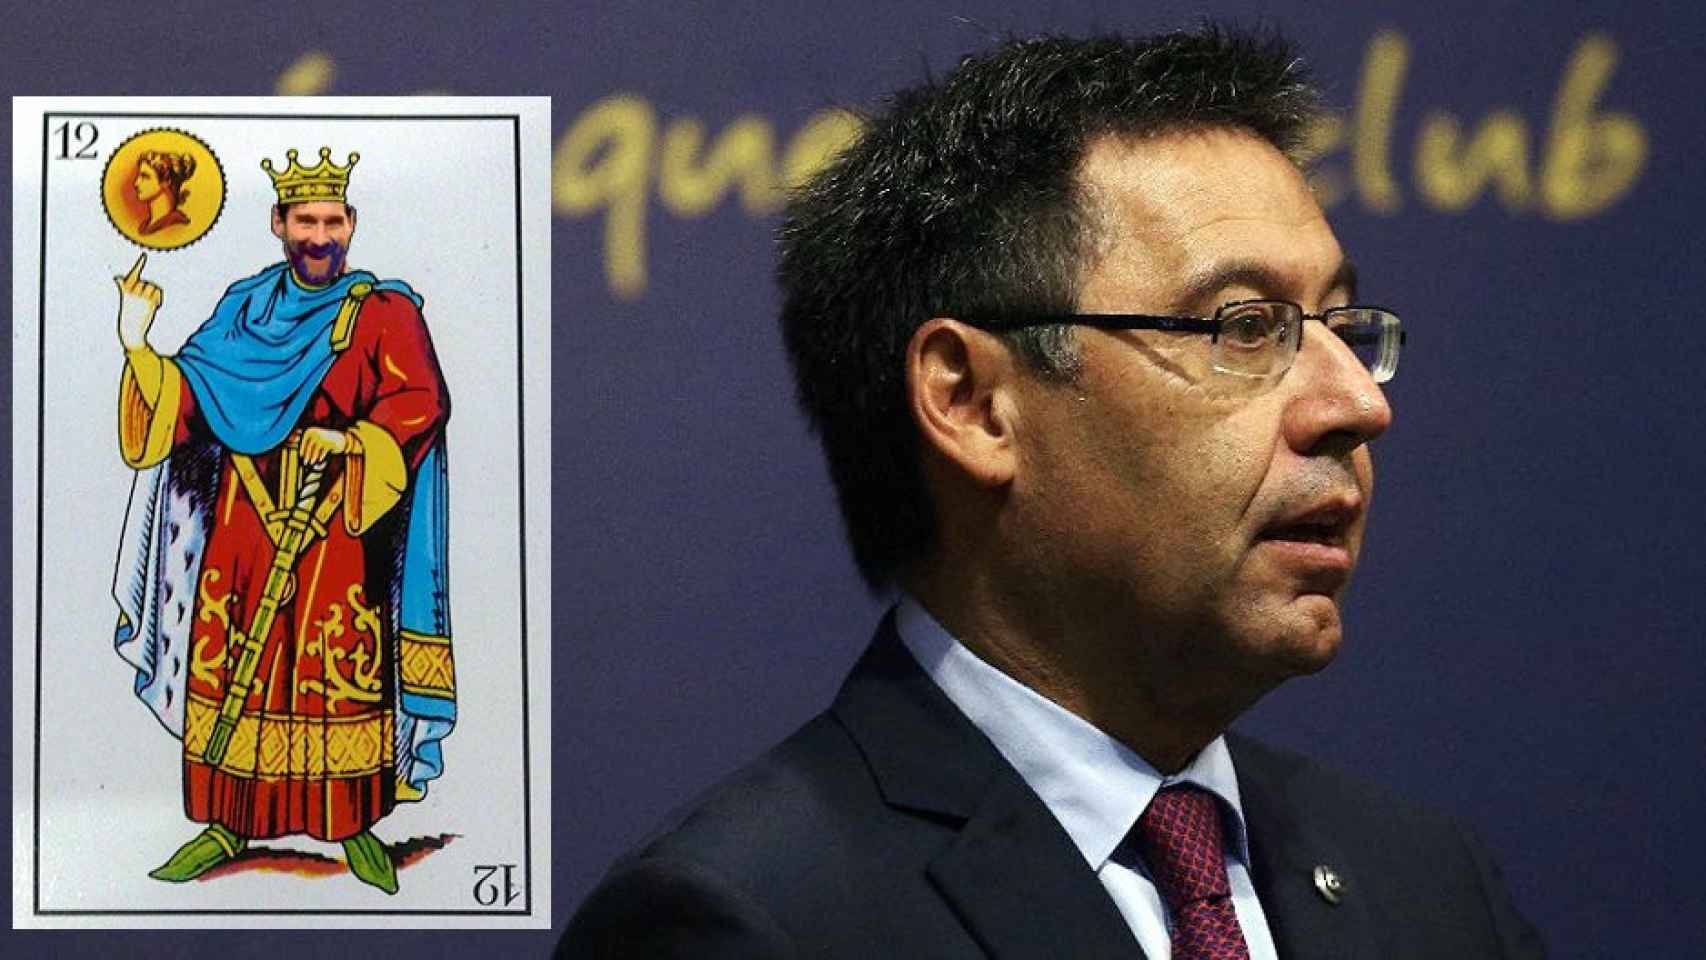 El presidente del Barça, Josep Maria Bartomeu, y la carta del rey de oros Messi / FOTOMONTAJE DE CULEMANÍA